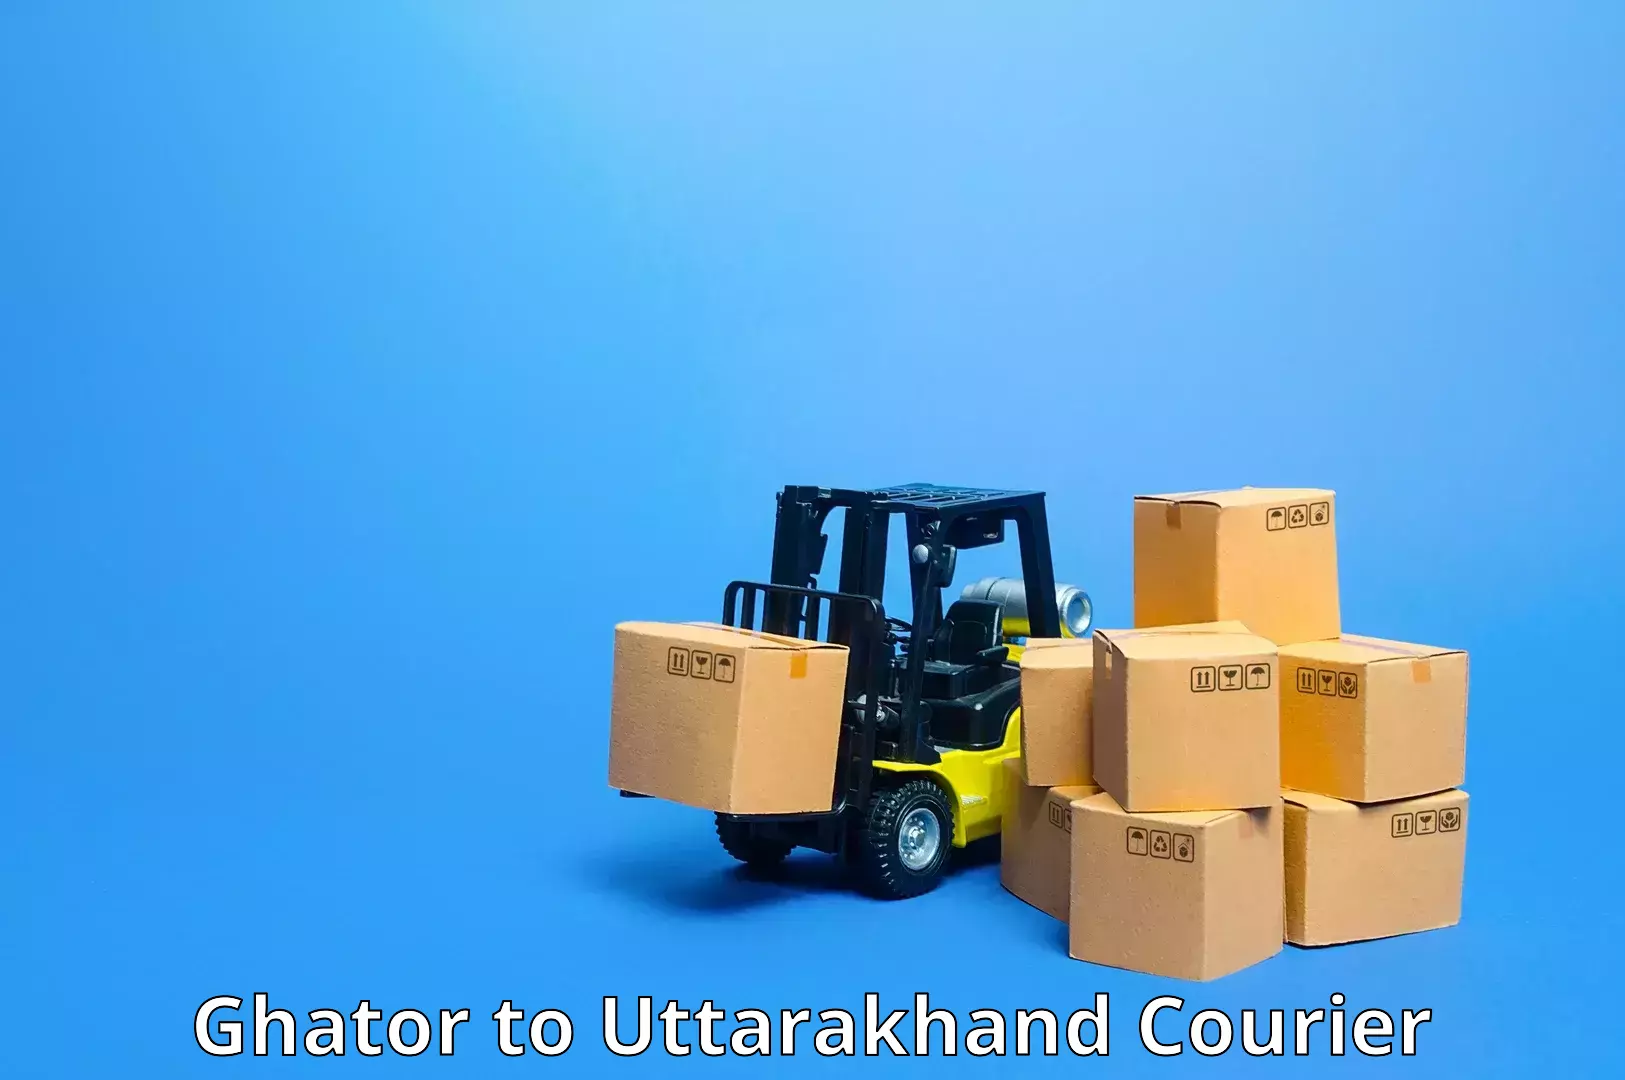 Efficient order fulfillment in Ghator to Uttarakhand